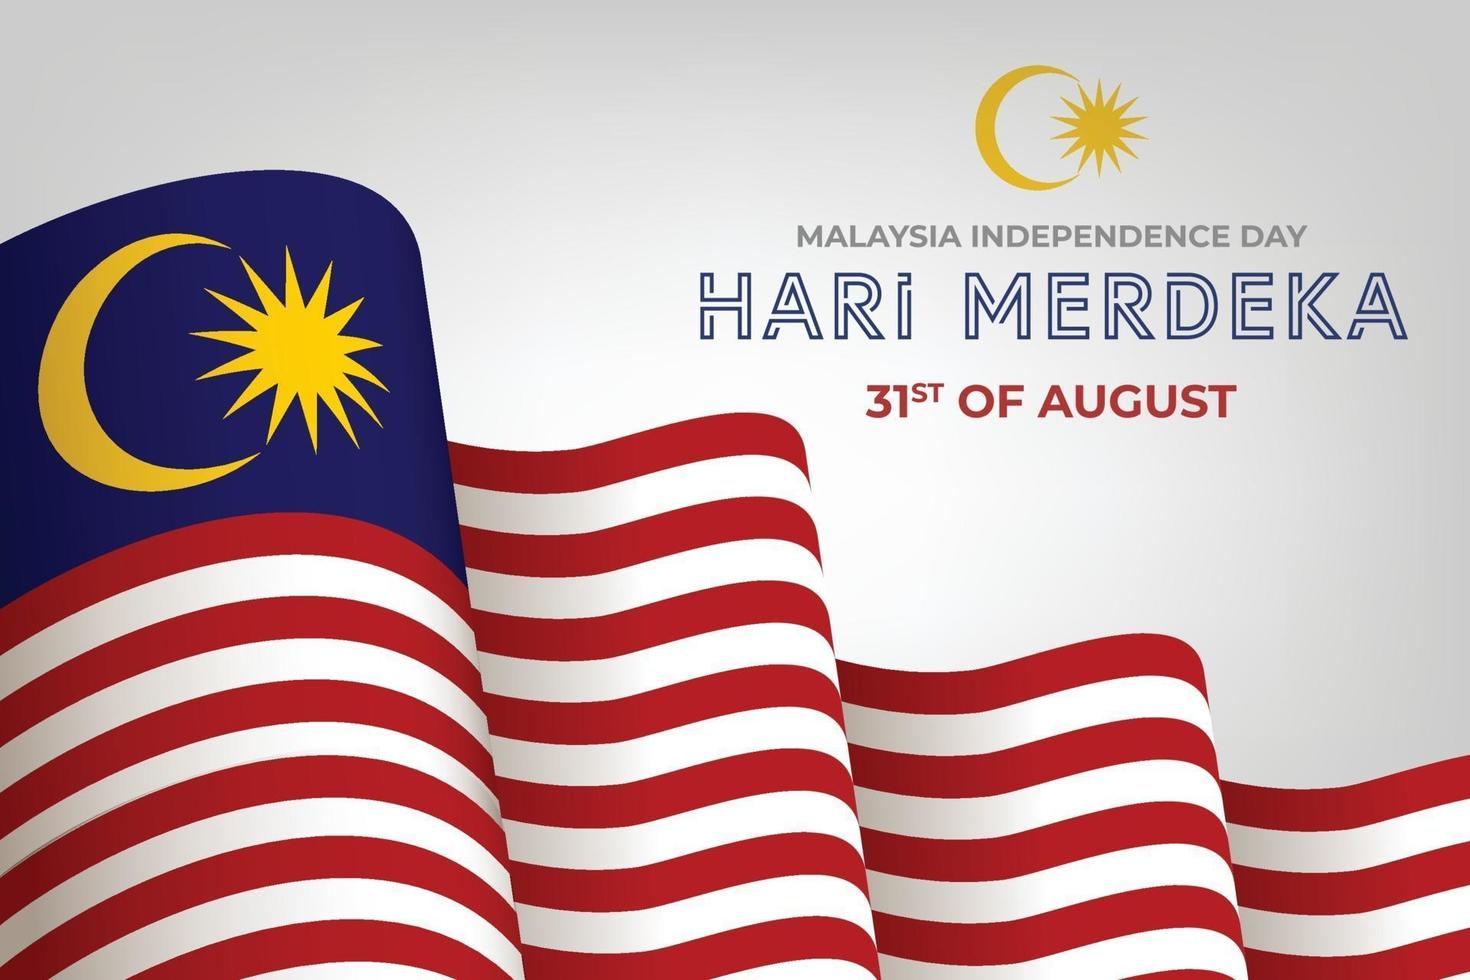 día de la independencia de malasia, día de merdeka, 31 de agosto vector